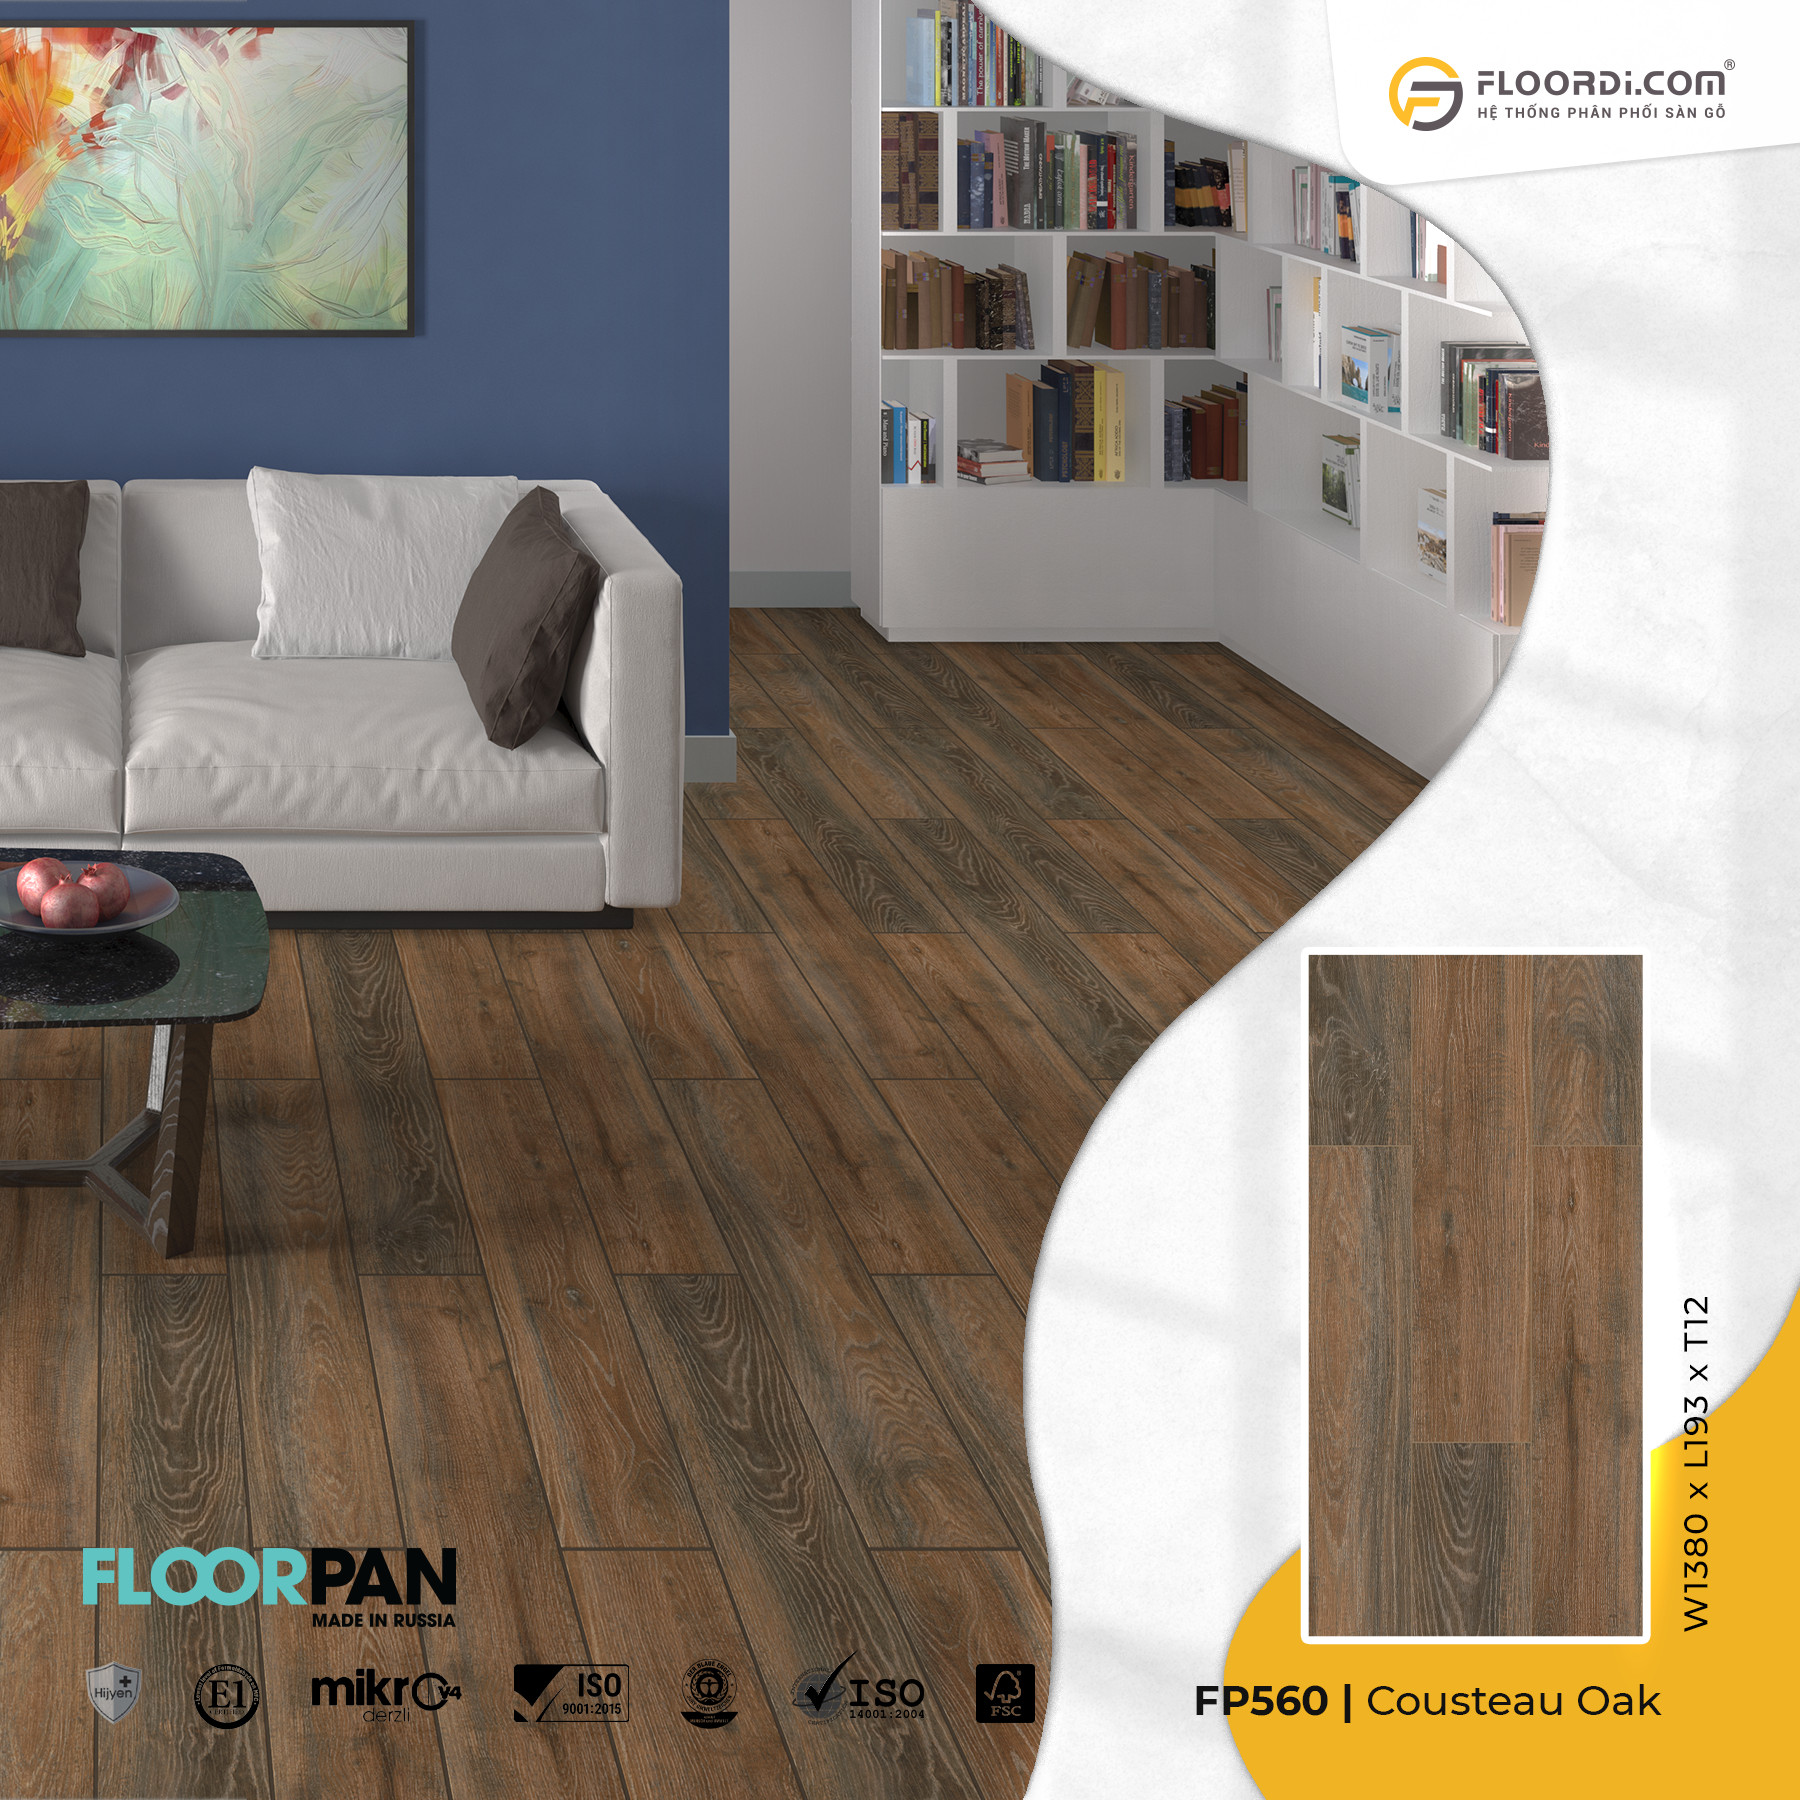 Sàn gỗ Floorpan 12mm với vân gỗ ấn tượng và độ bền cao